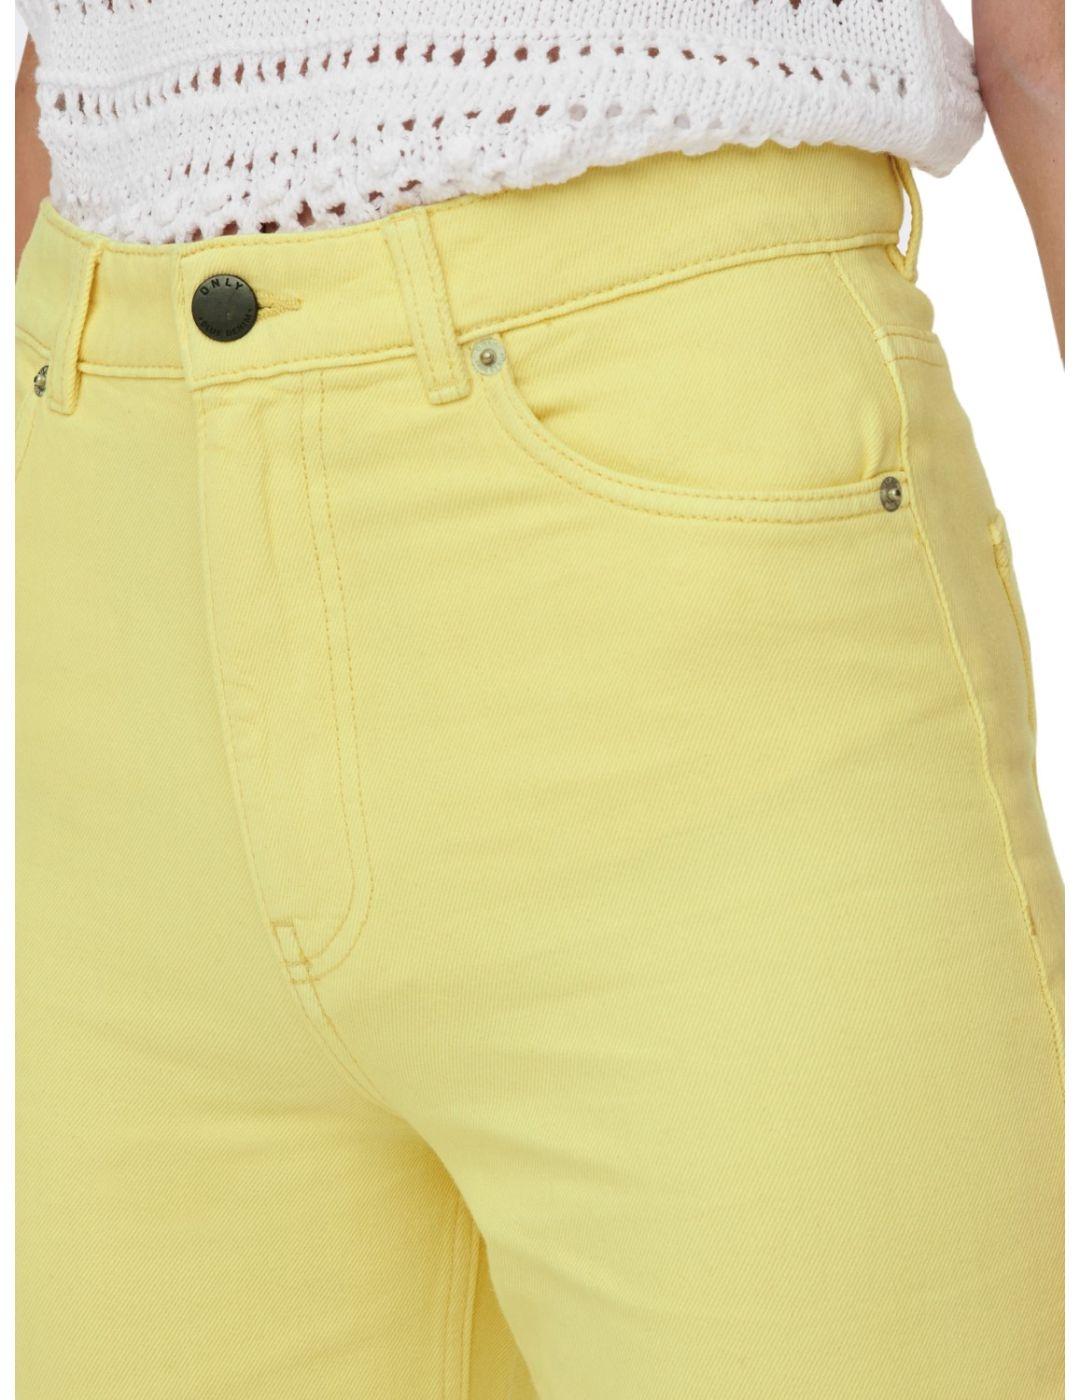 Pantalon Only Camille amarillo para mujer-b